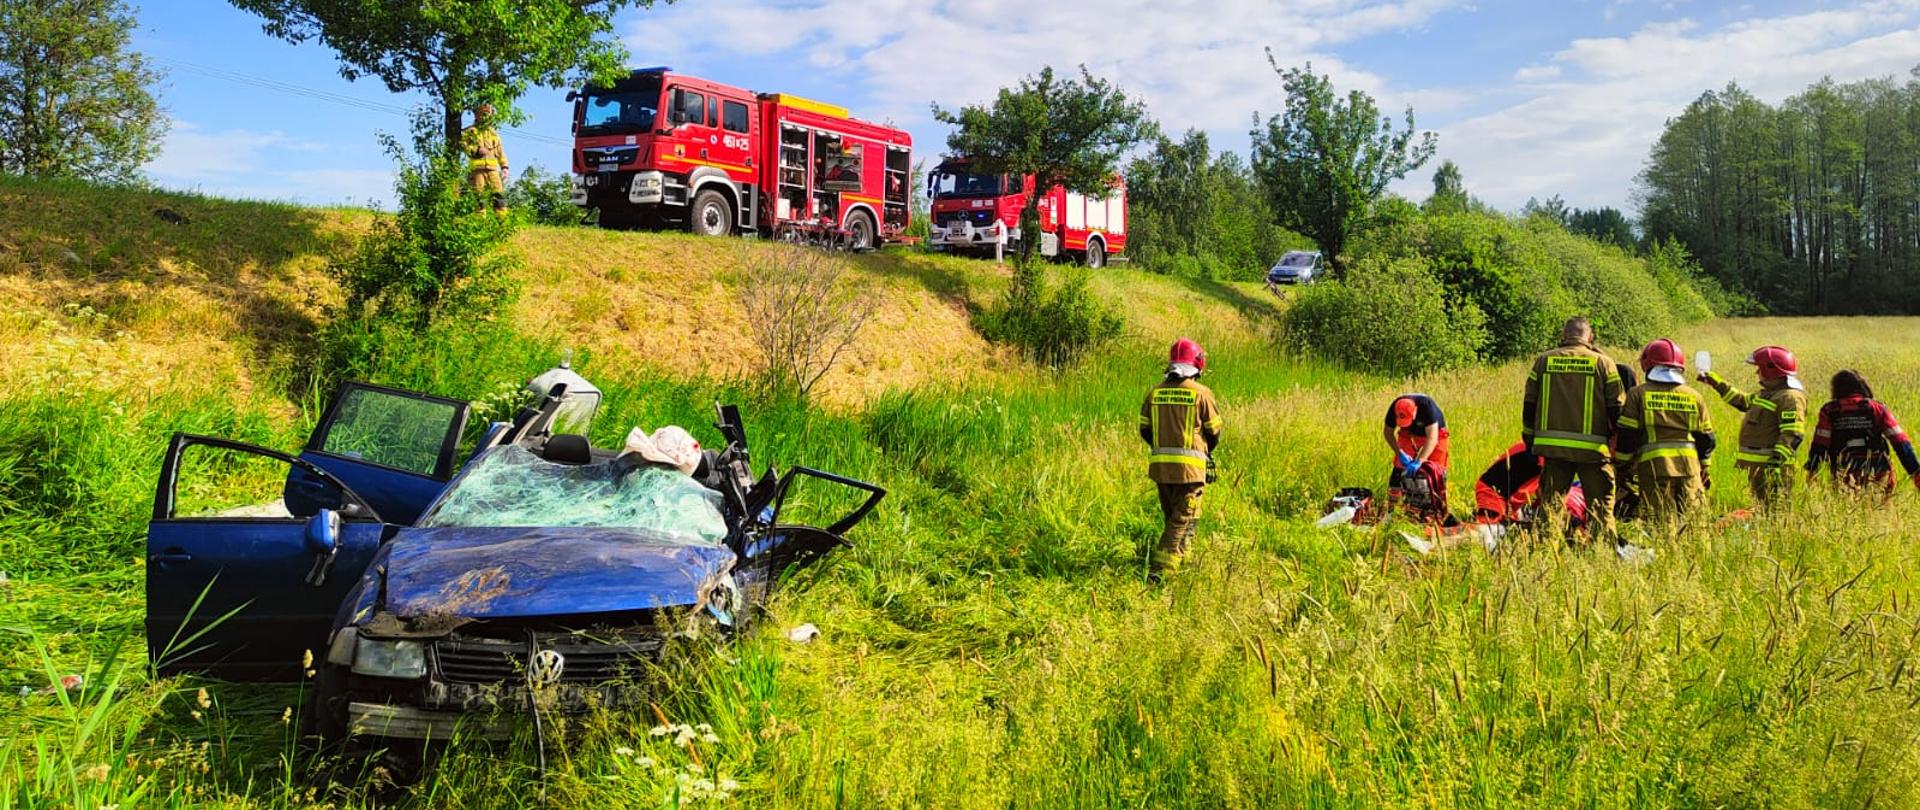 śmiertelny wypadek na DK16 w m. Świackie; na zdjęciu samochód osobowy biorący udział w wypadku, strażacy oraz ratownicy medyczni podczas działań